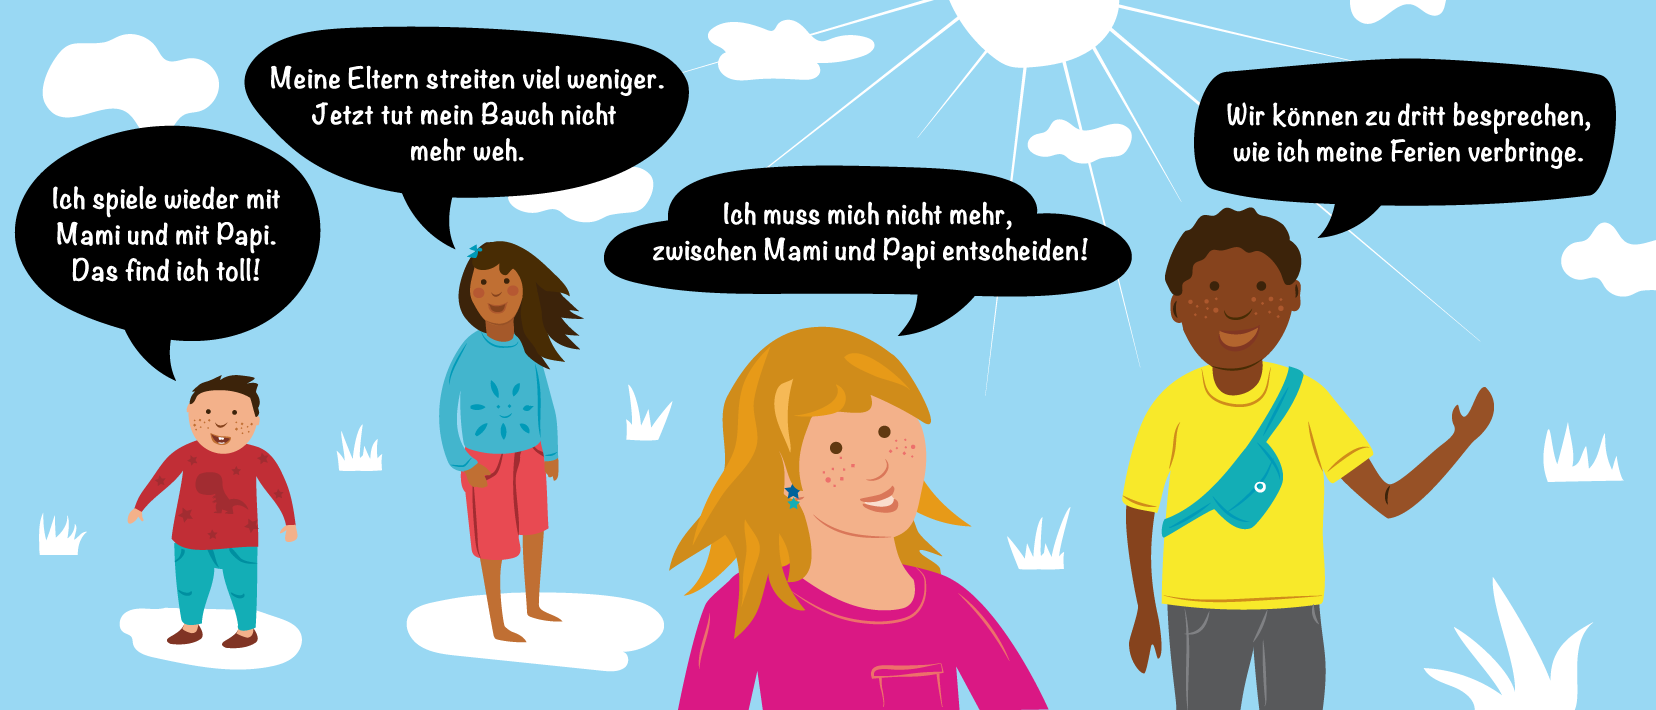 Eine Illustration zeigt vier Kinder verschiedenen Alters mit Sprechblasen, die ihre Erfahrung mit Trennung wiedergeben.